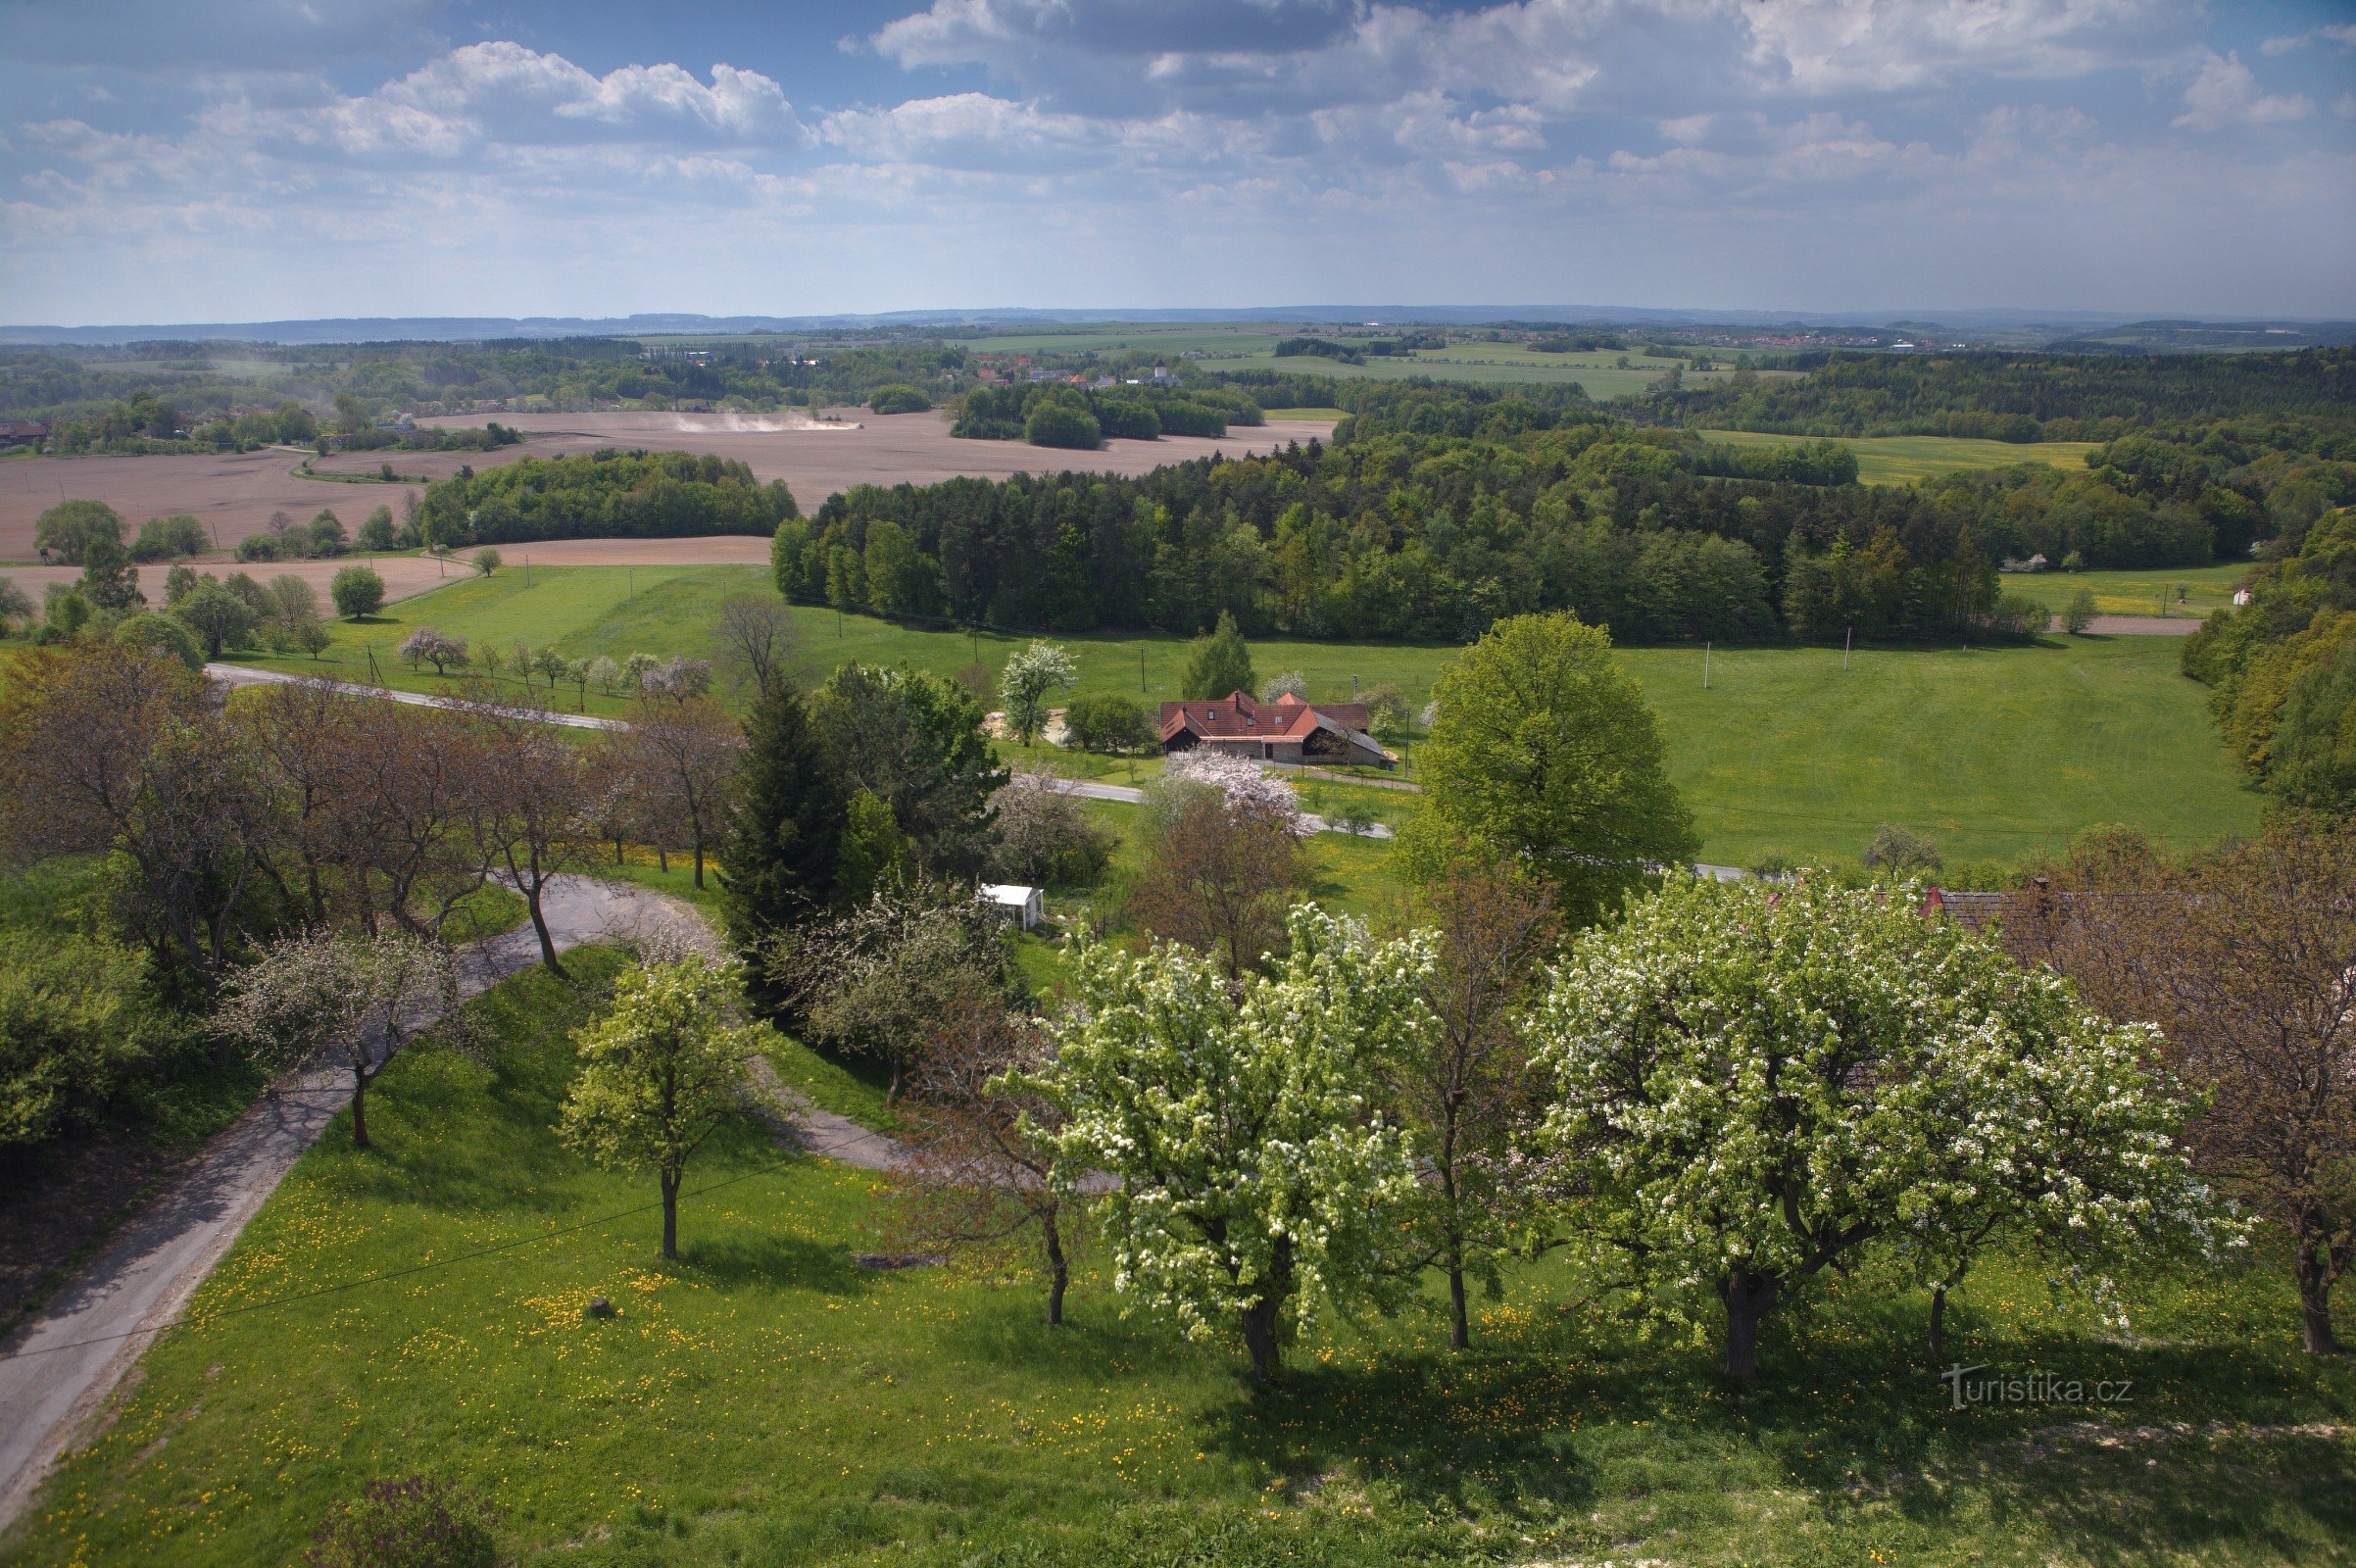 Hluboká - utsikt från utsiktstornet Borůvka